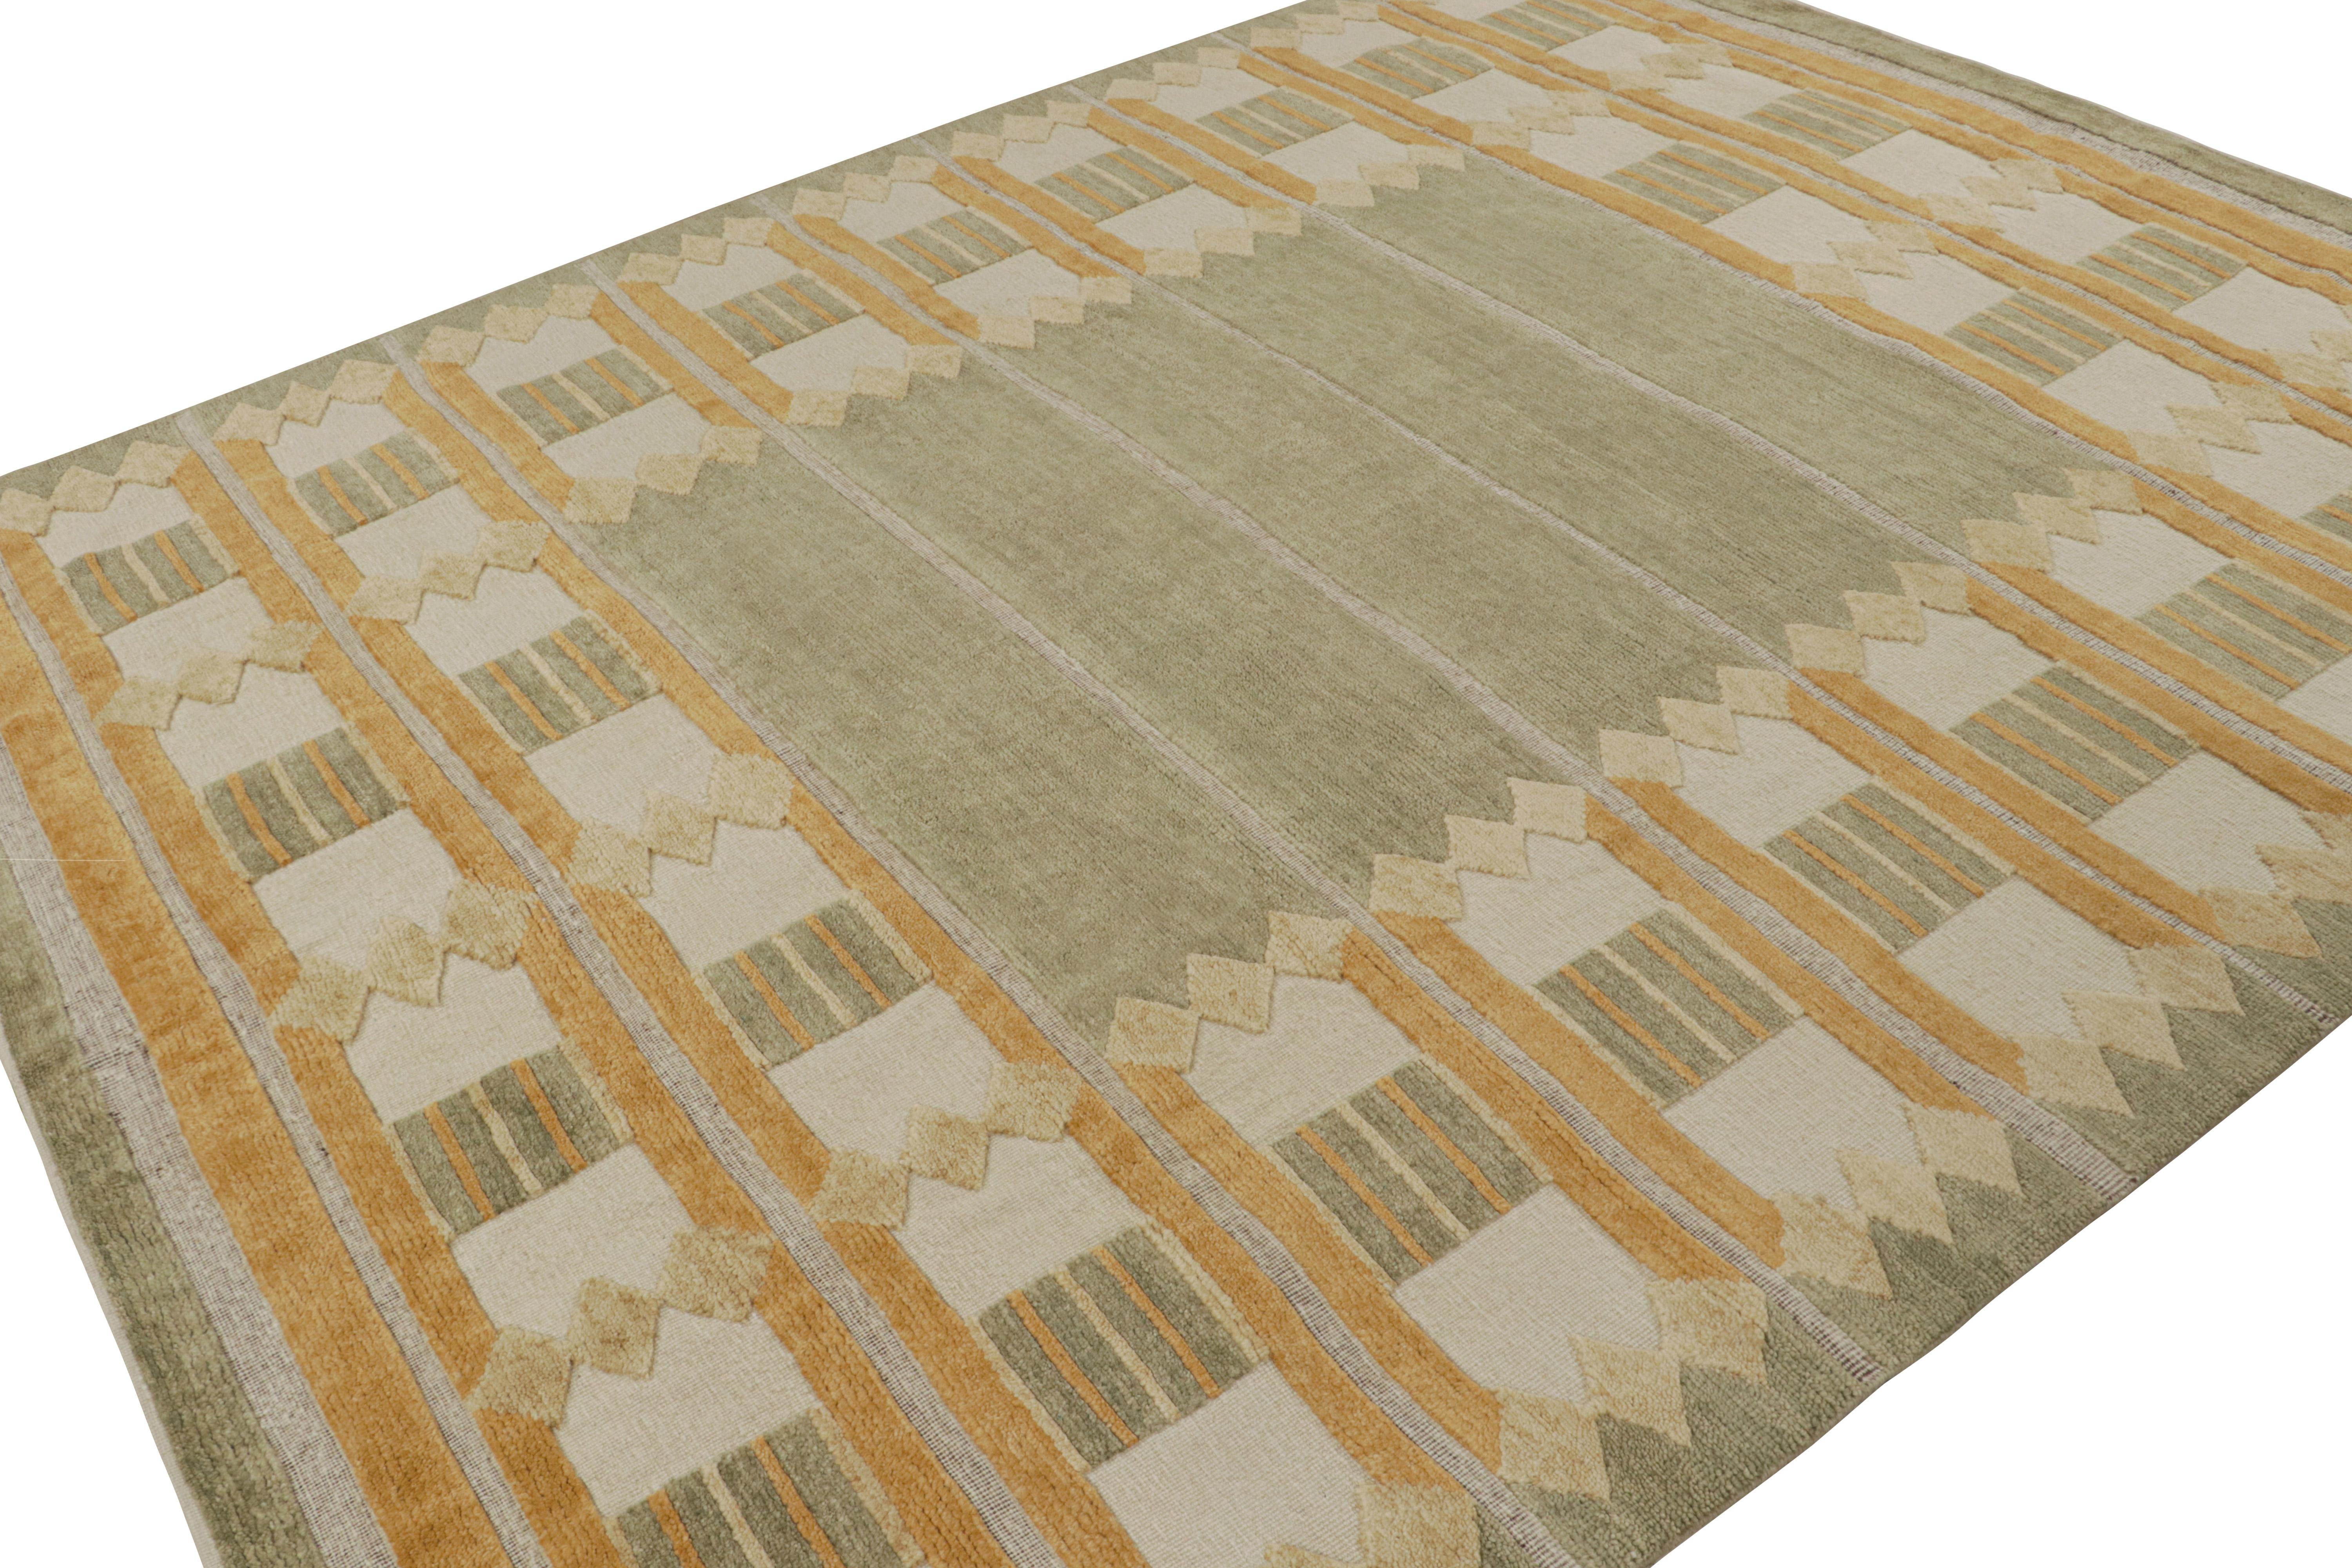 Ce tapis 8x10 personnalisé est issu de la collection de tapis scandinaves de Rug & Kilim. Noué à la main en laine et en fils naturels non teints, son design est une version moderne des tapis Rollakan et Rya dans le style déco suédois. 

Sur le